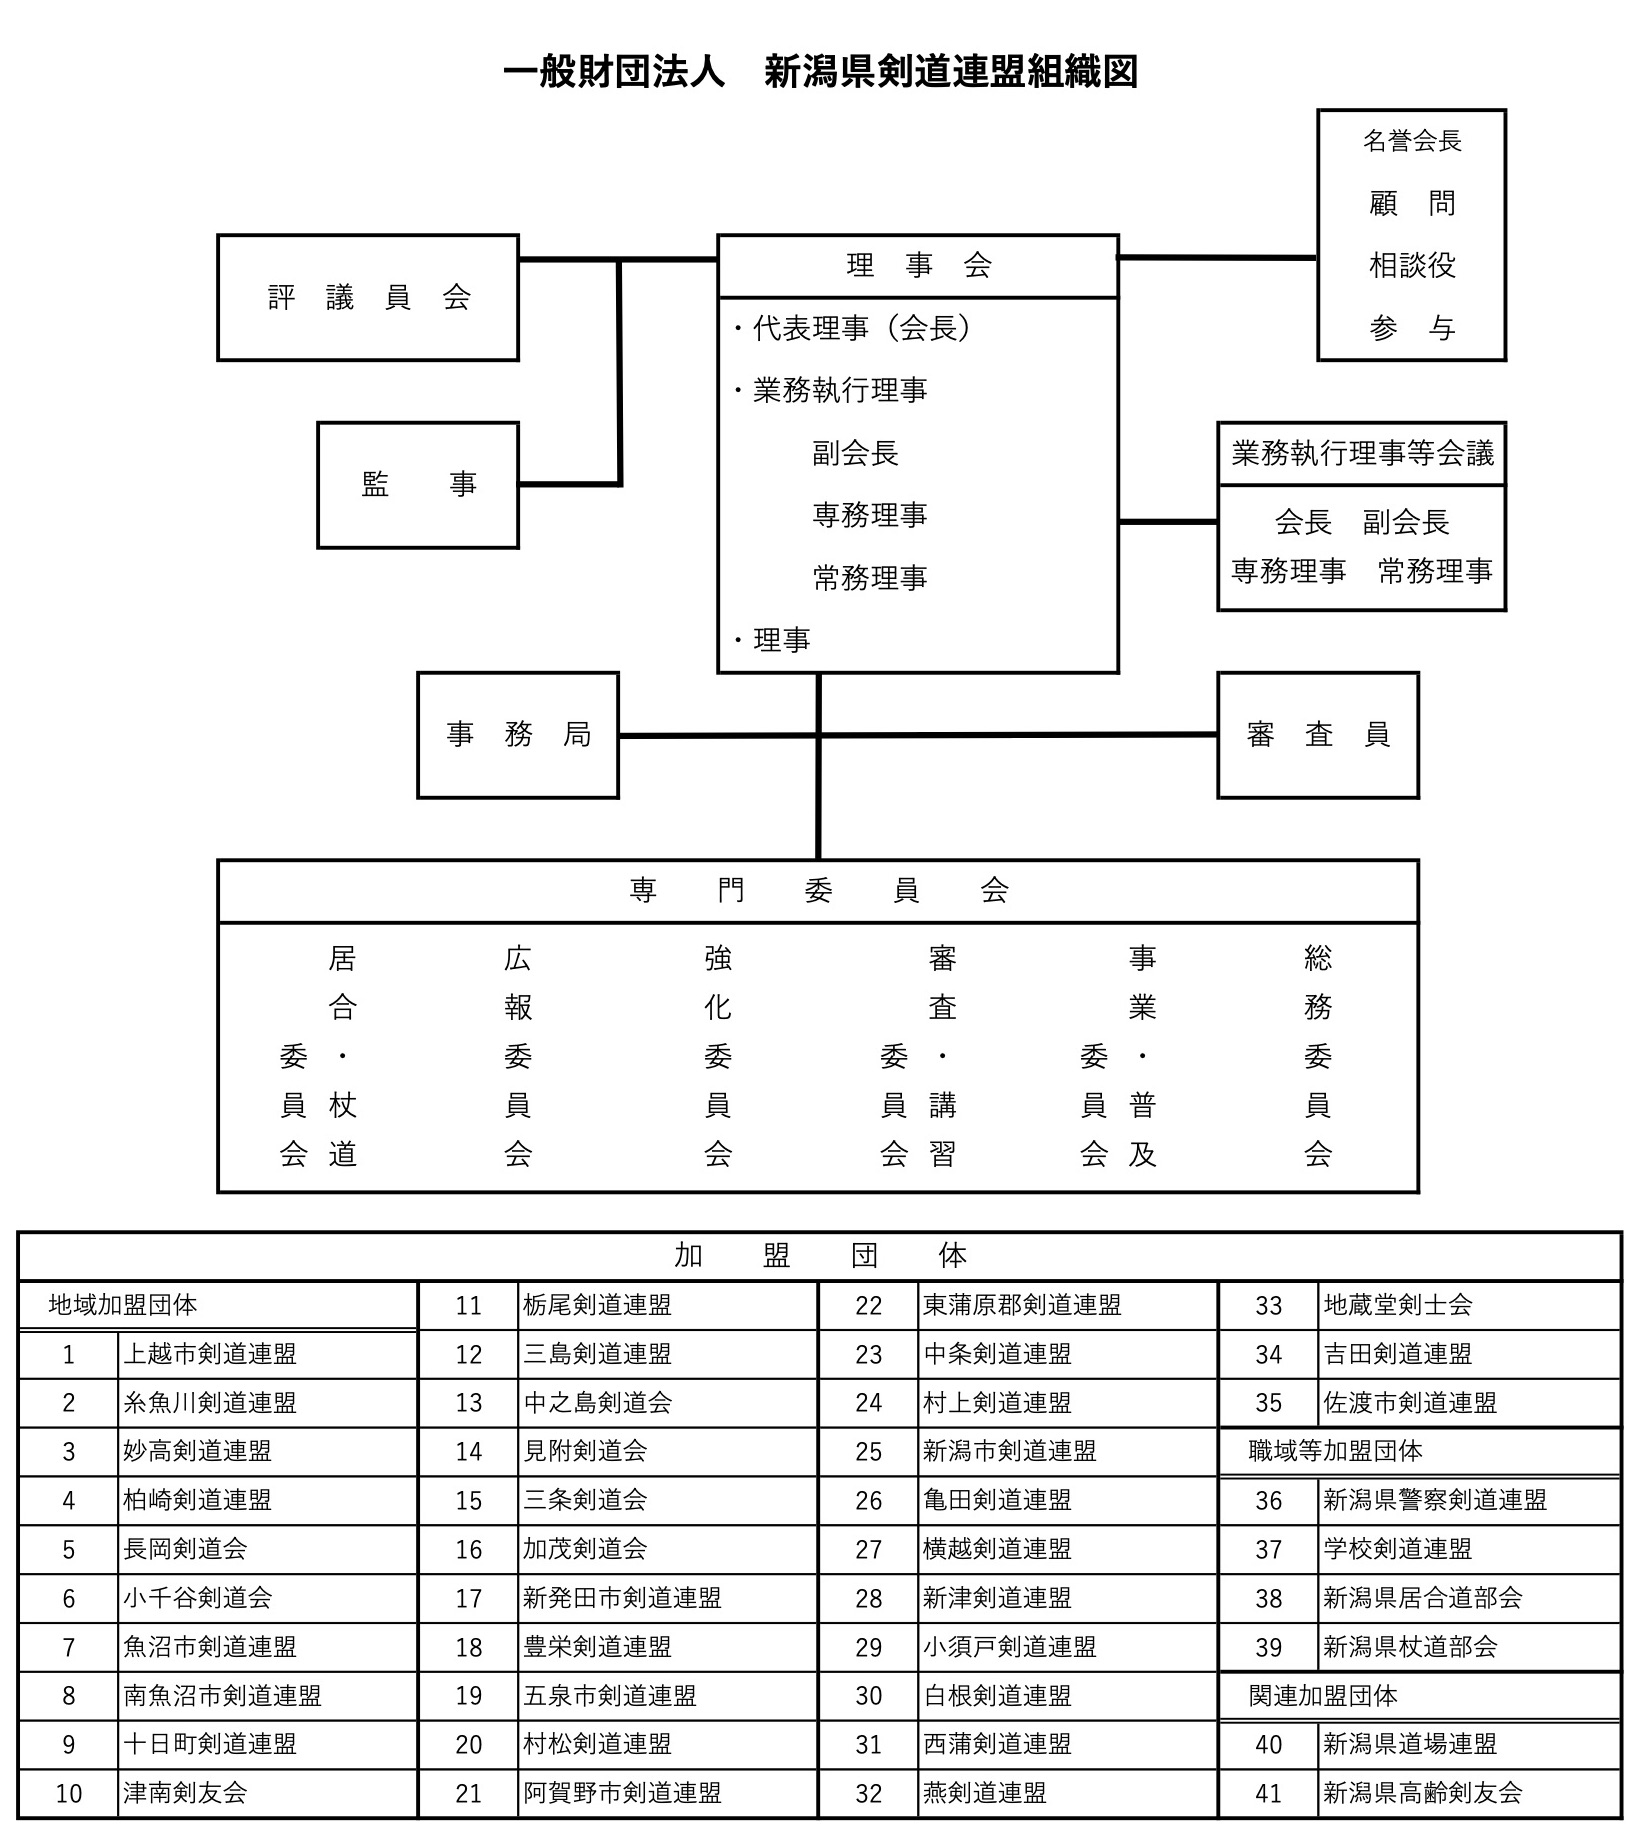 新潟県剣道連盟　組織図